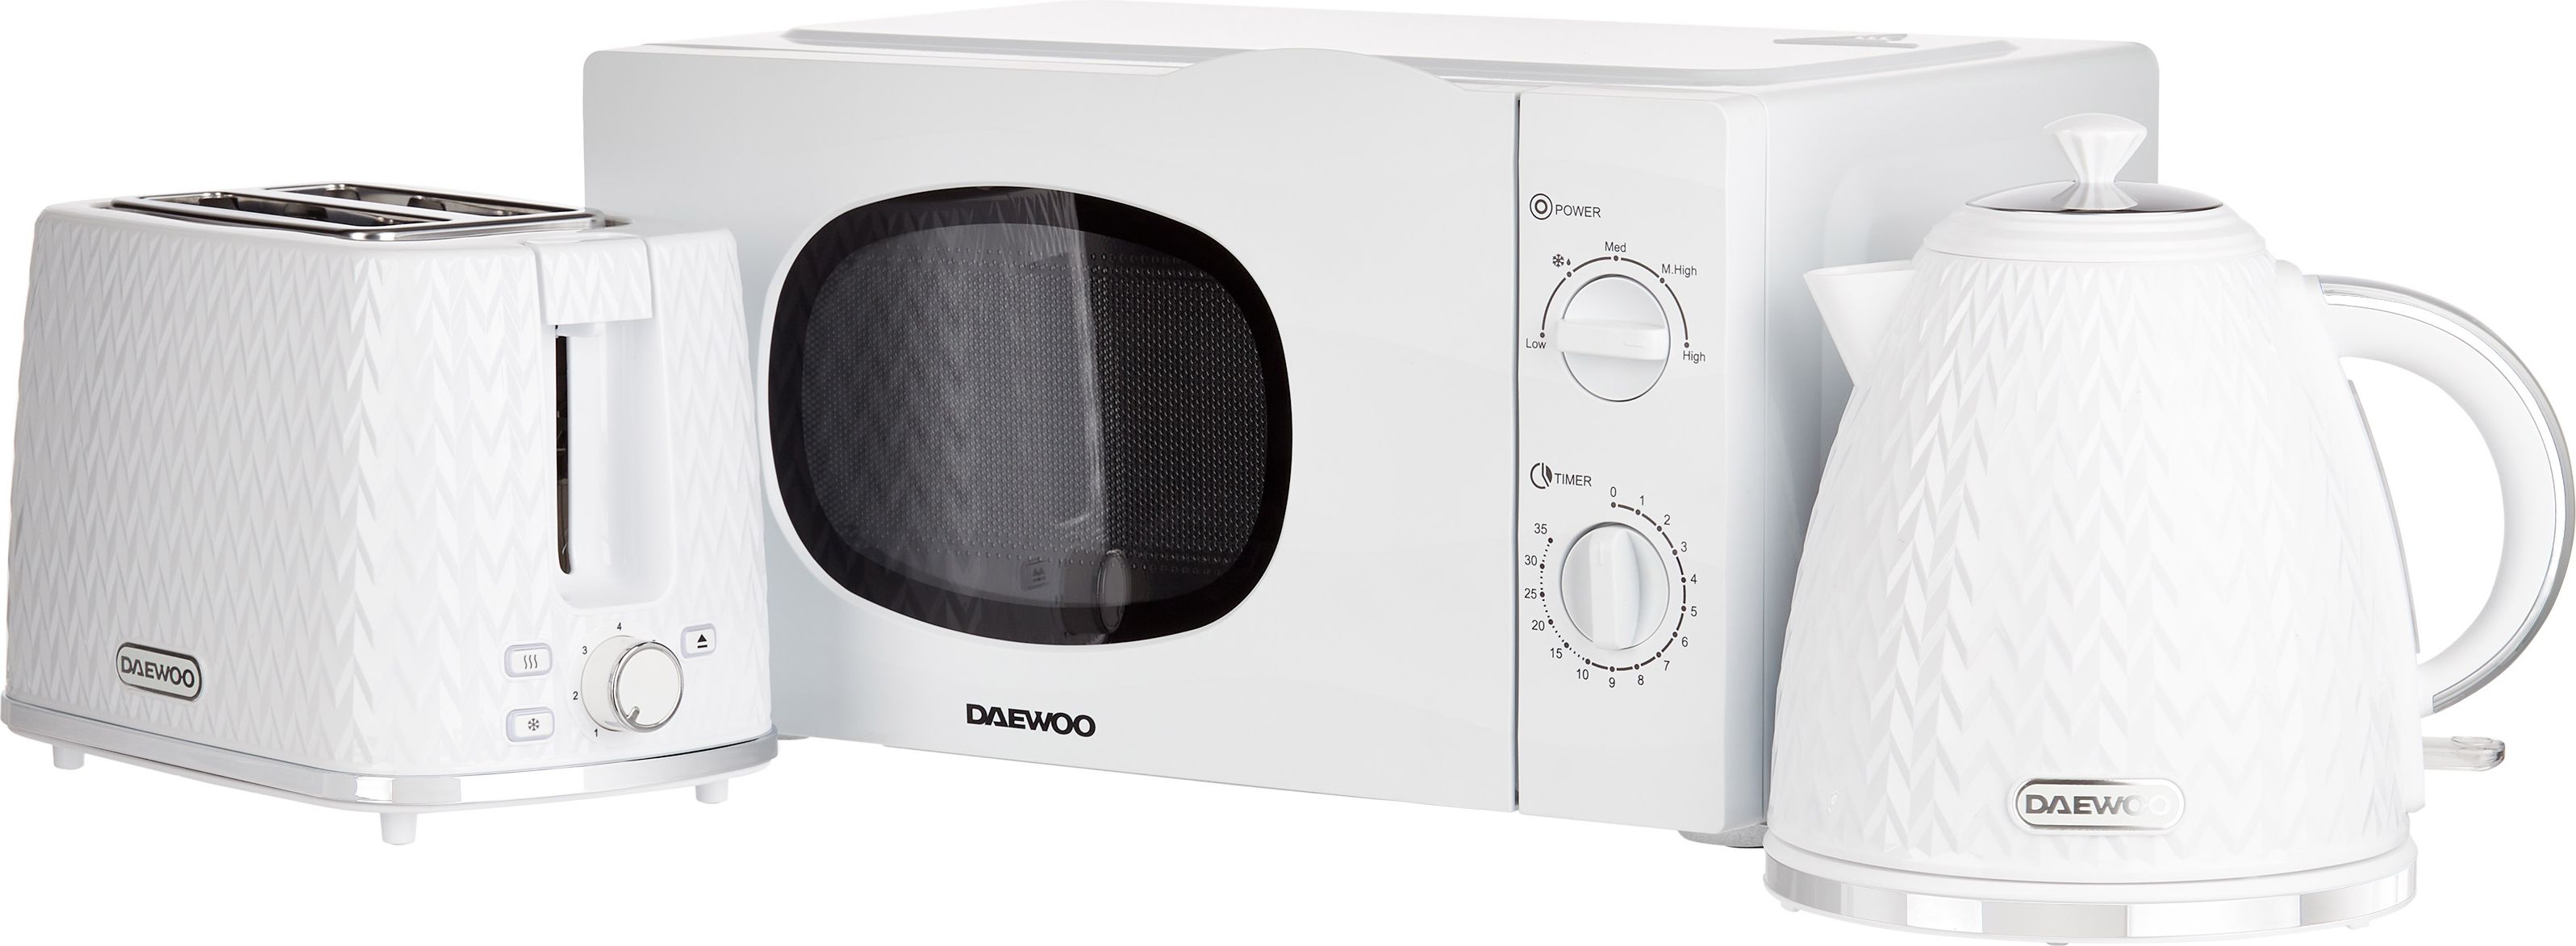 Daewoo Argyle Collection SDA2575 Freestanding Microwave - White, White